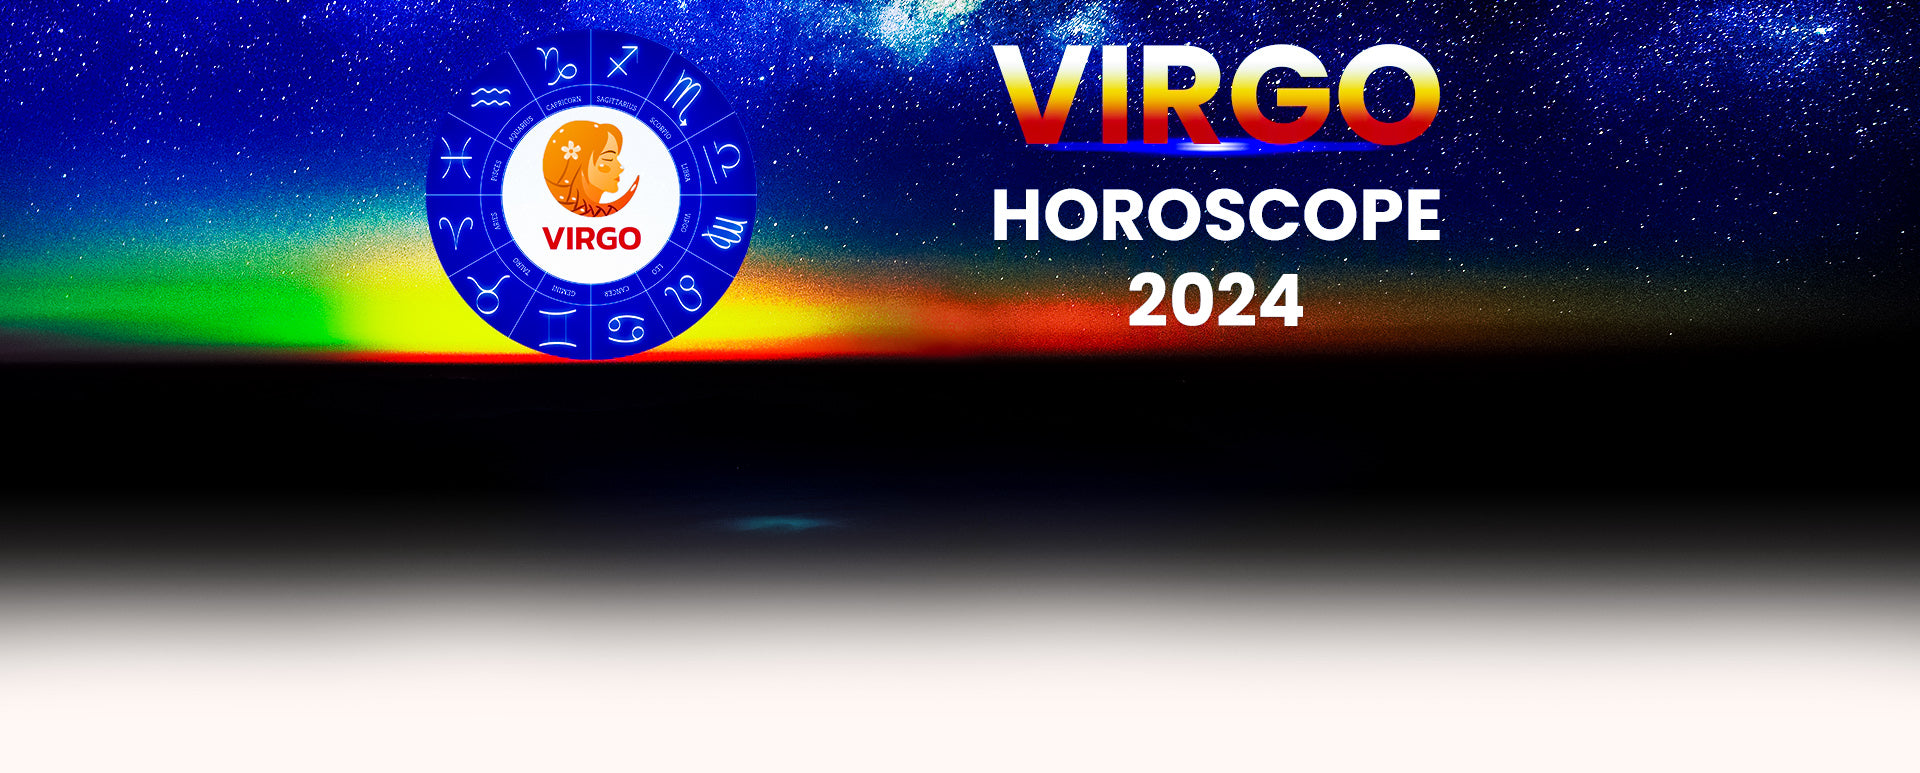 Virgo February 2024 Horoscope Paola Rosamund